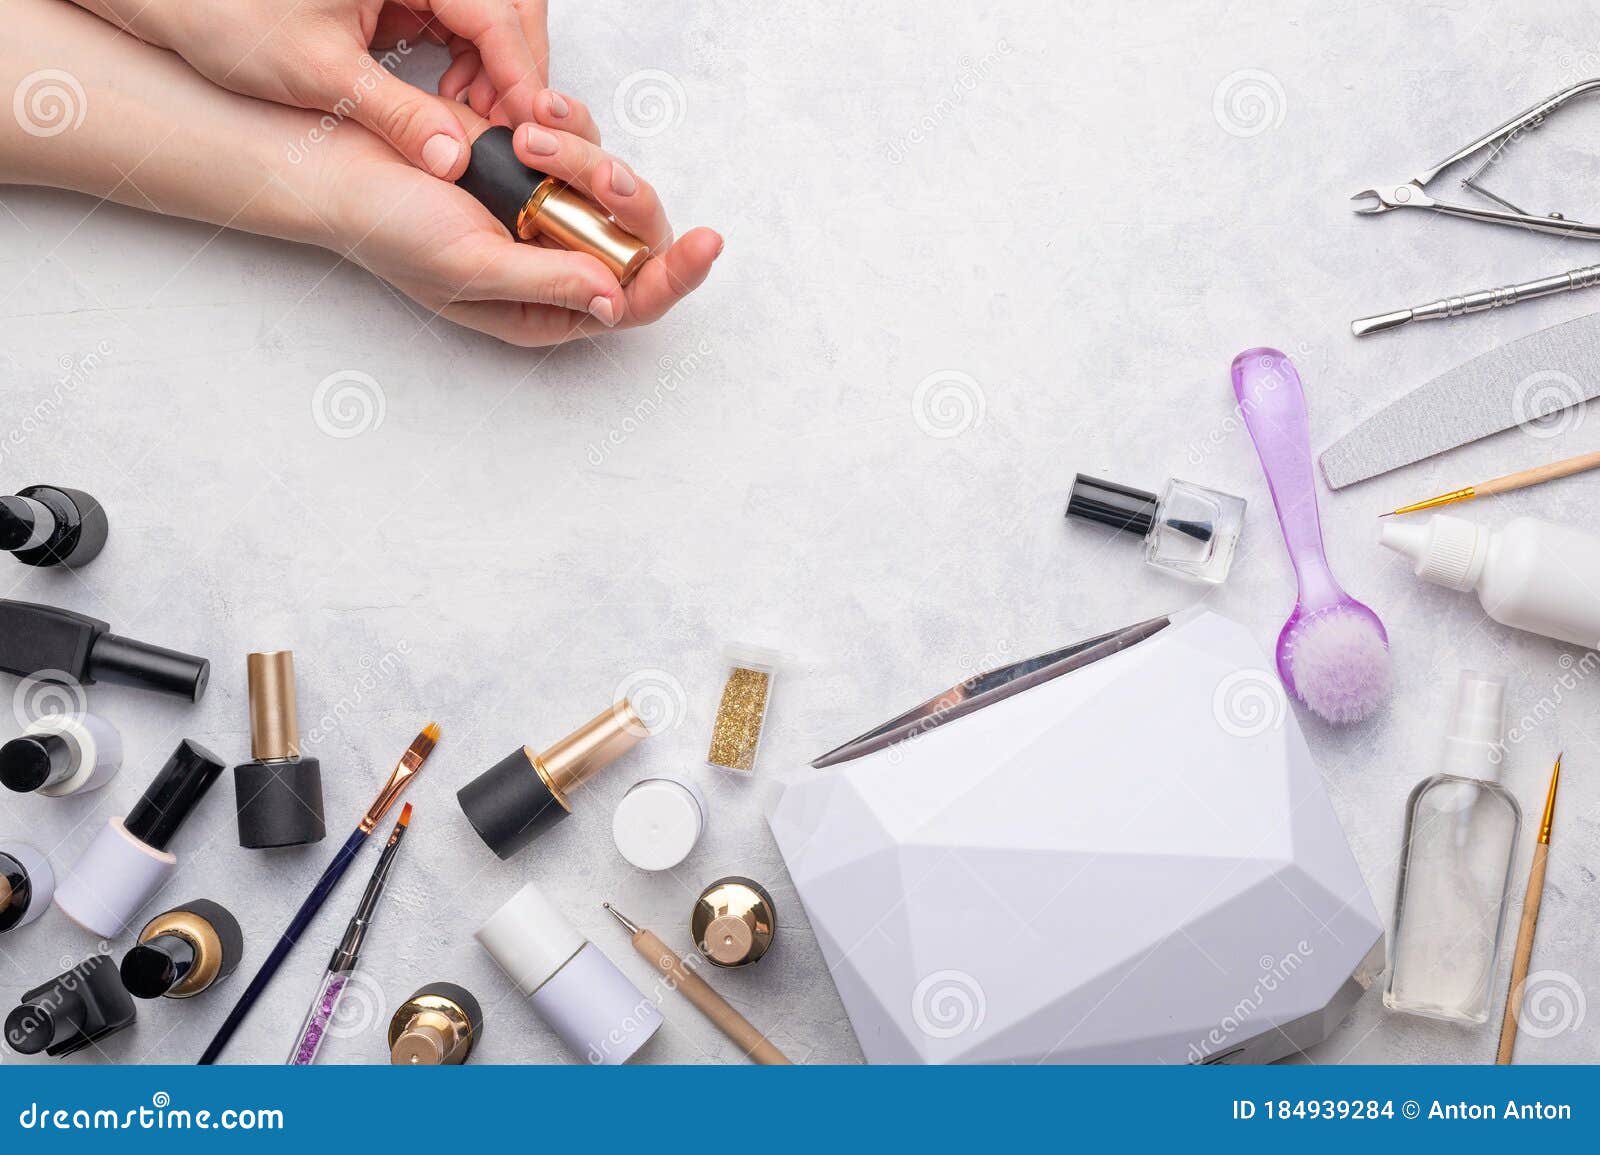 Maquillaje cosmético para manos manicura de uñas hermosas esmalte de uñas  publicidad en papel de color  Foto Premium